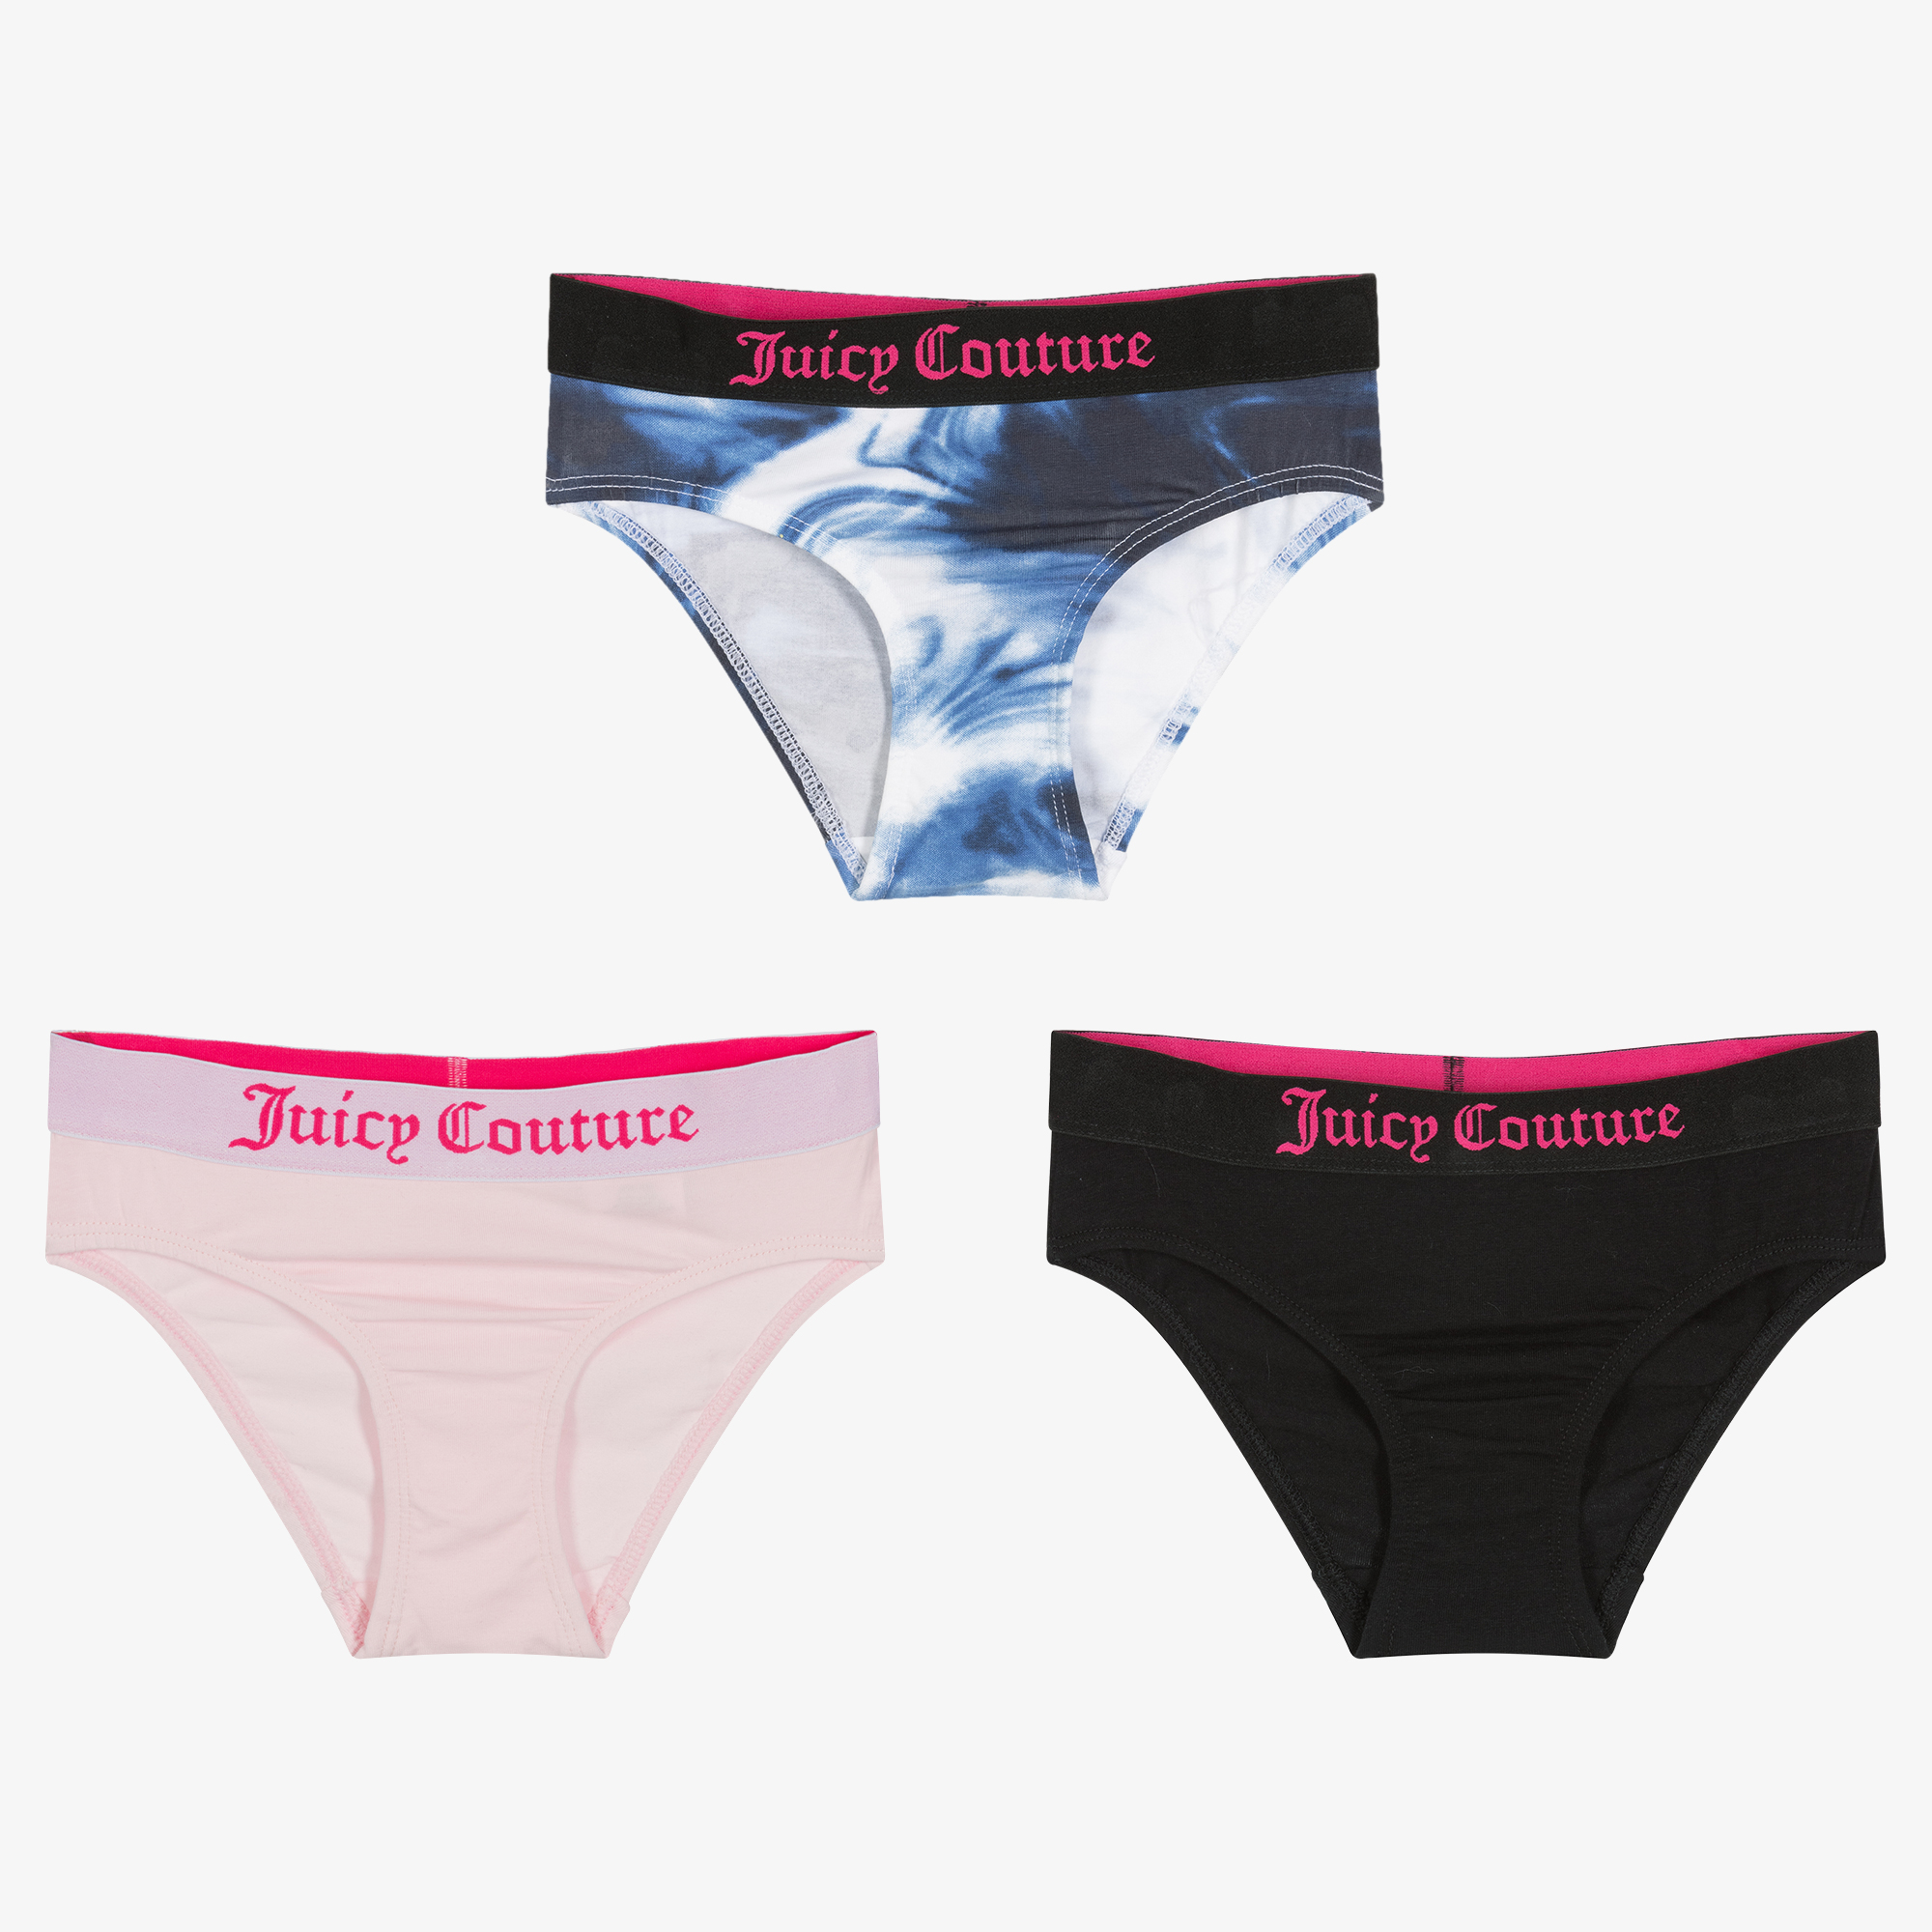 MEDIUM {Juicy Couture} Panties 3 Pack